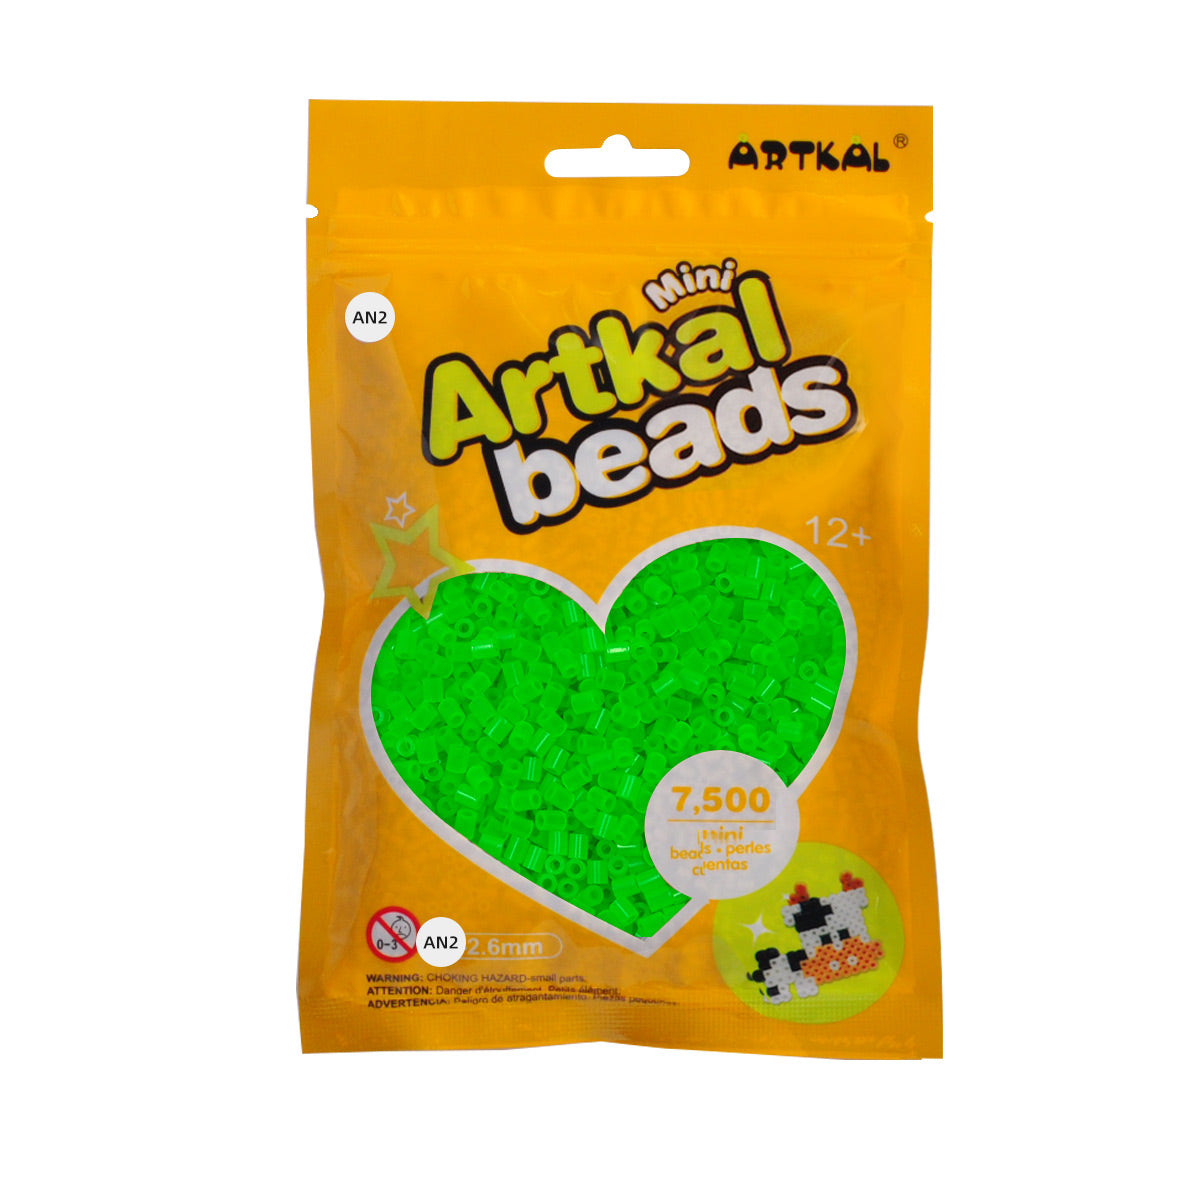 (AN1-AN4) A-2.6mm 7500P mini artkal beads แพ็คเดี่ยว